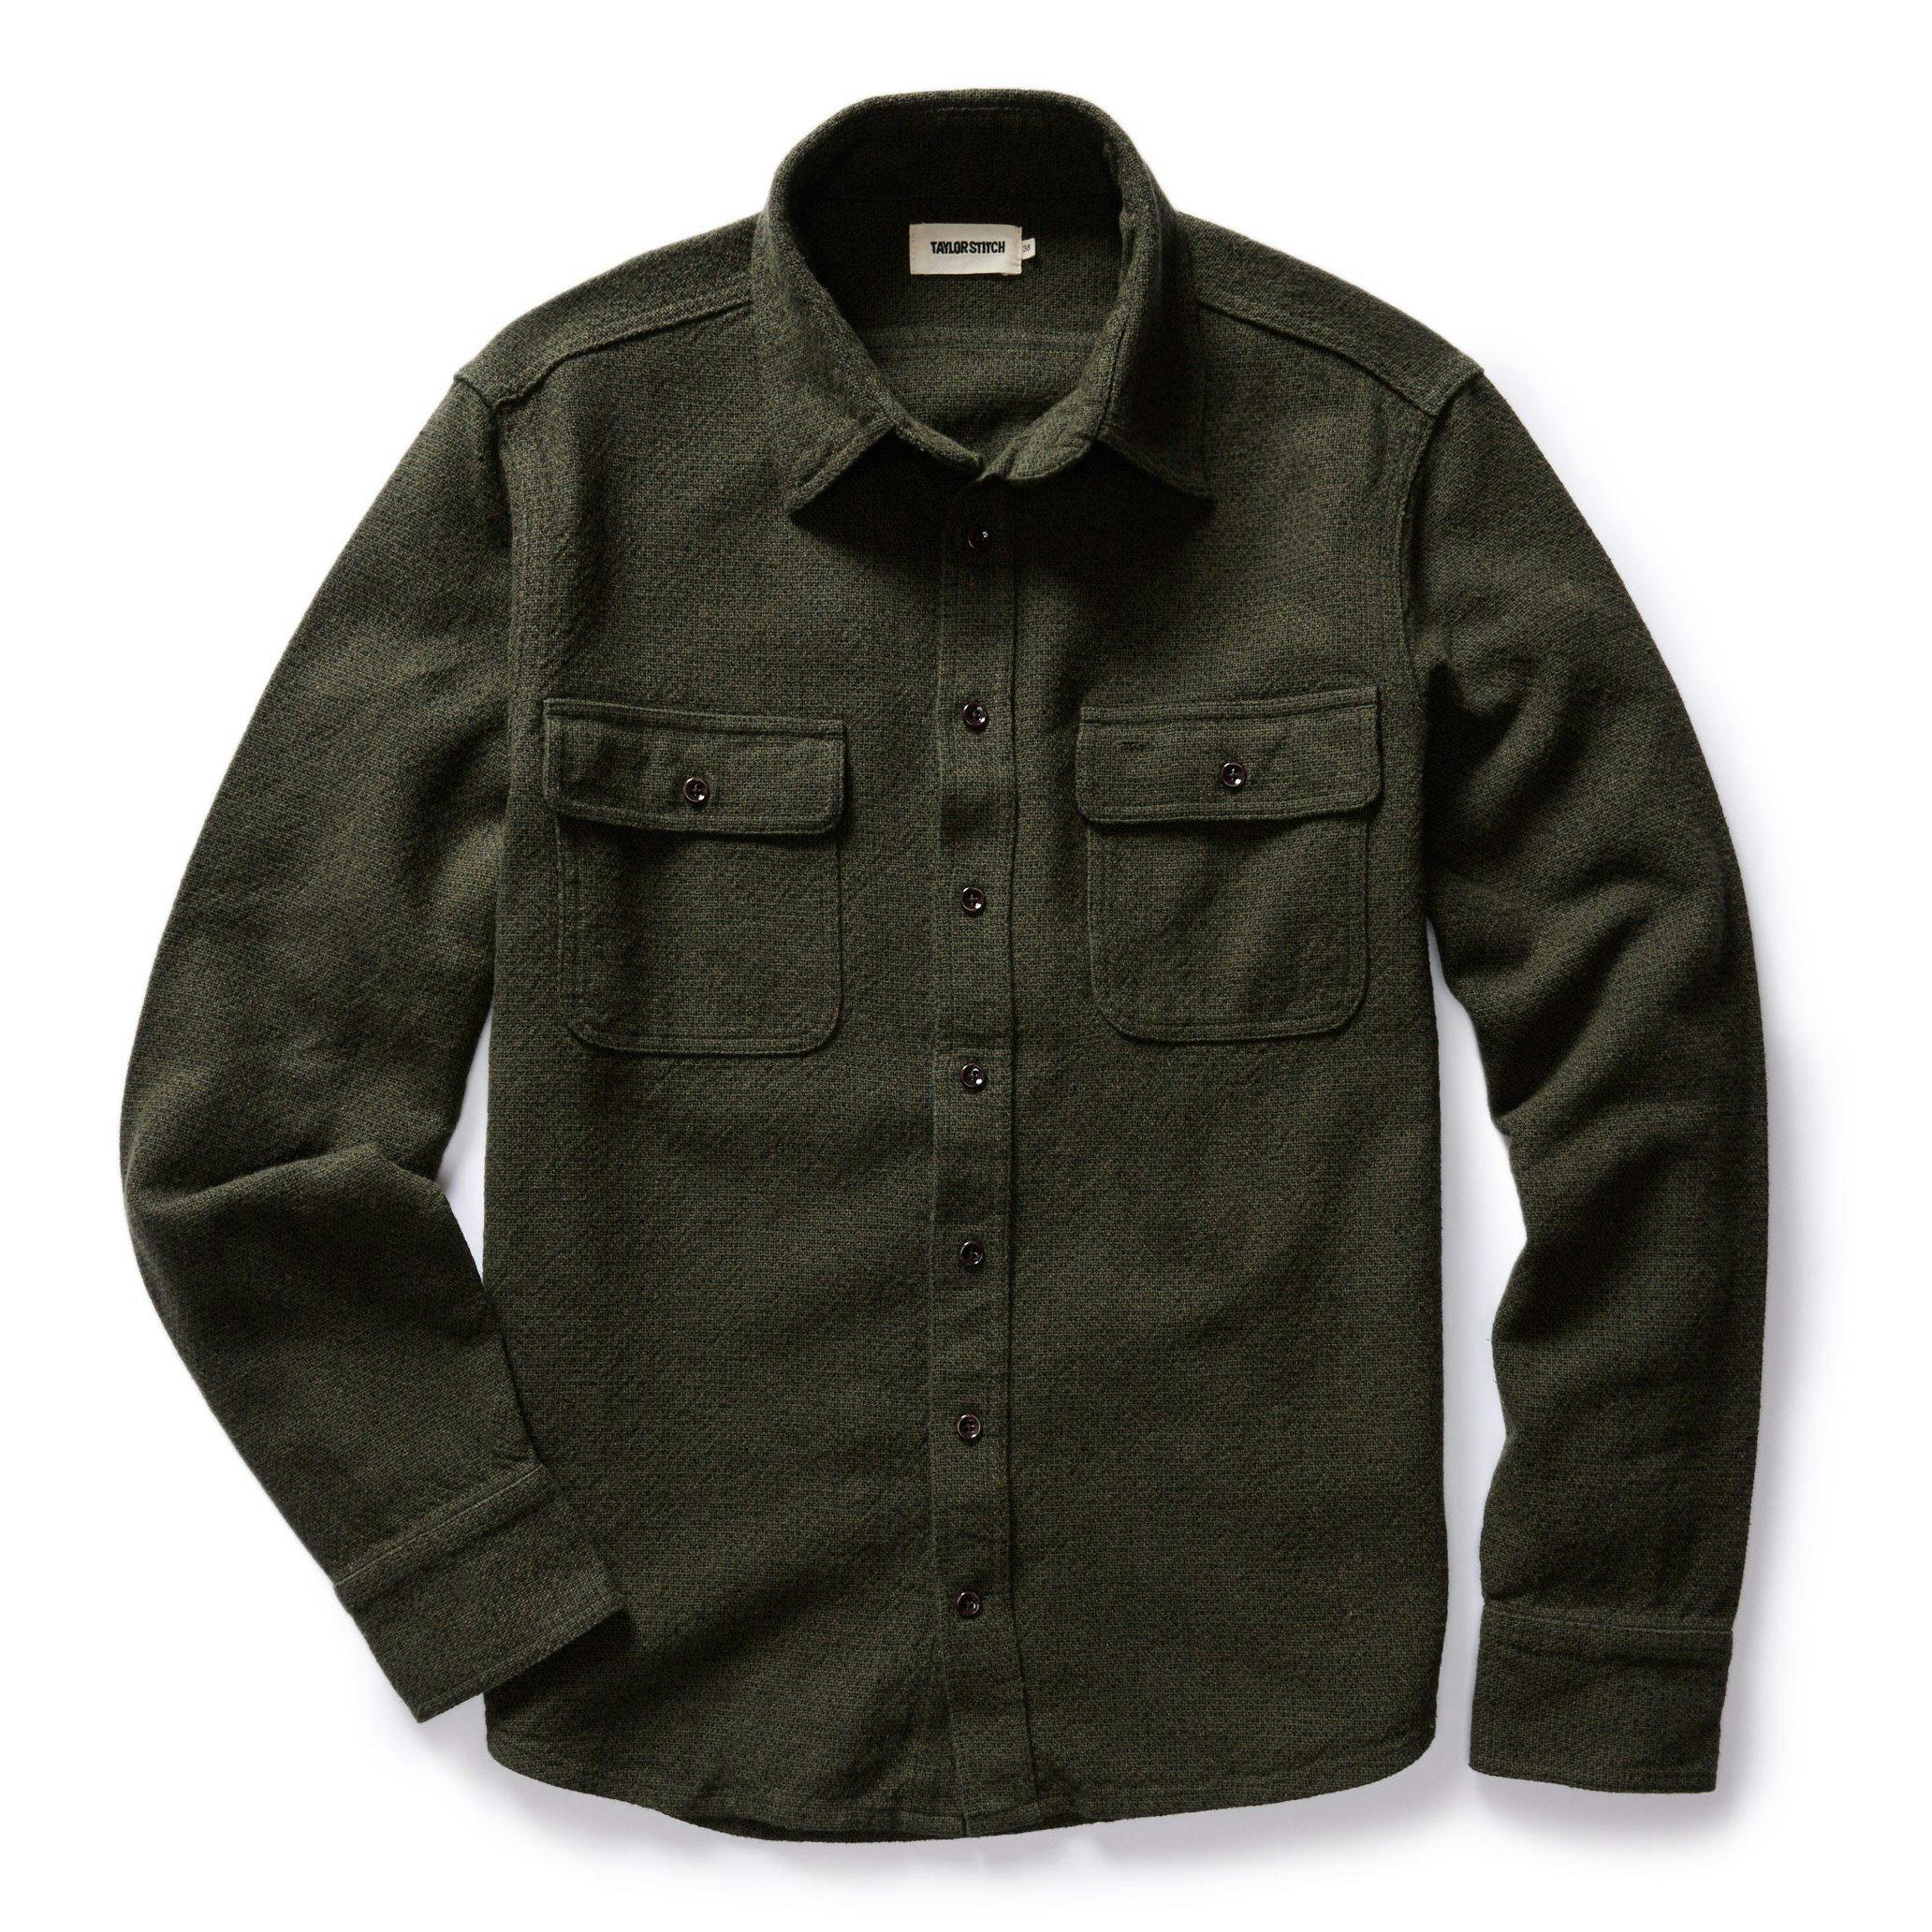 Men’s Vintage Workwear Inspired Clothing The Ledge Washed Linen Cotton Tweed Shirt $138.00 AT vintagedancer.com